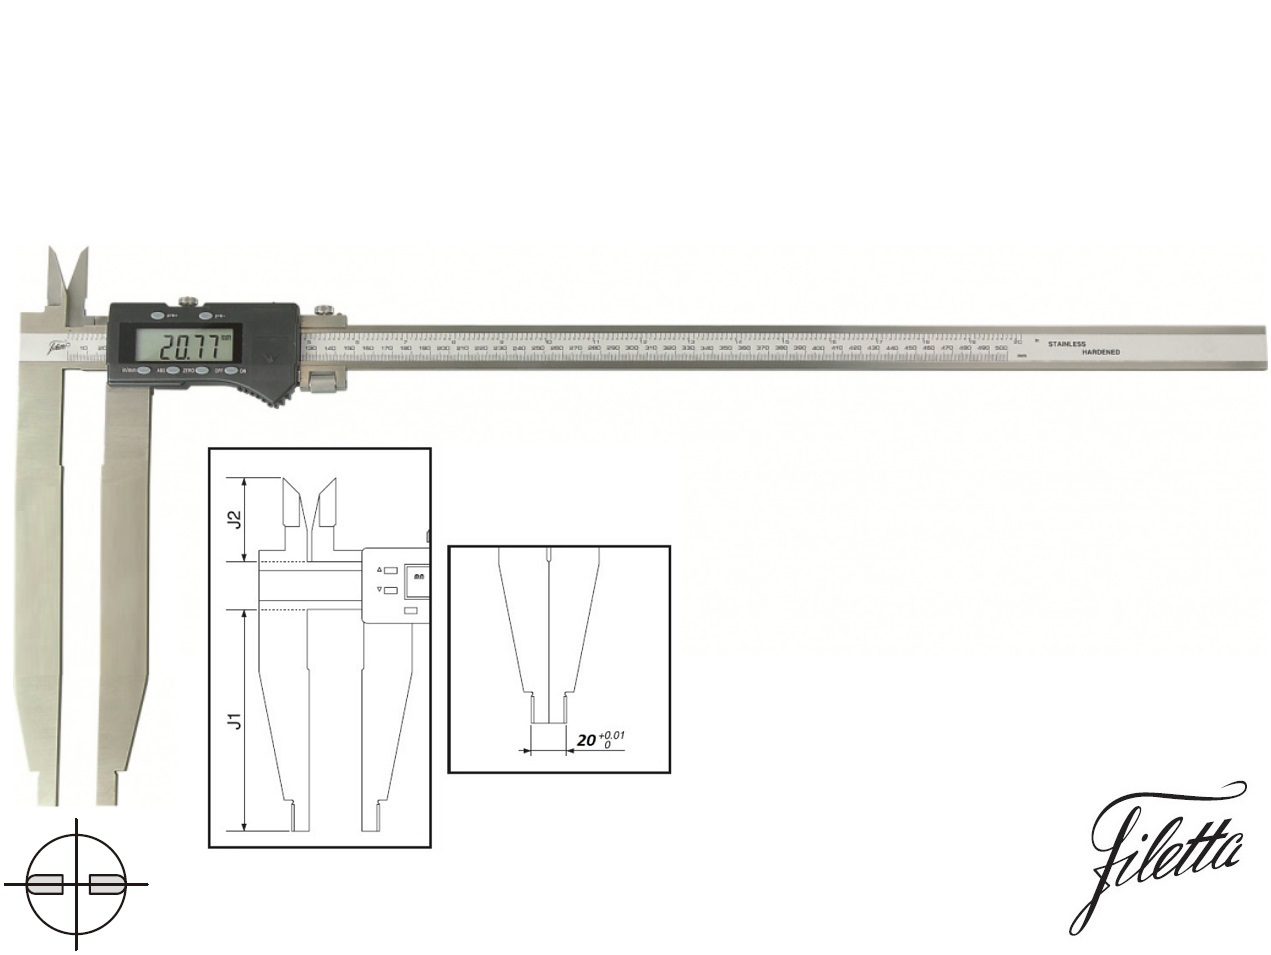 Digitální posuvné měřítko Filetta 0-1500/300 mm s měřicími nožíky pro vnitřní měření